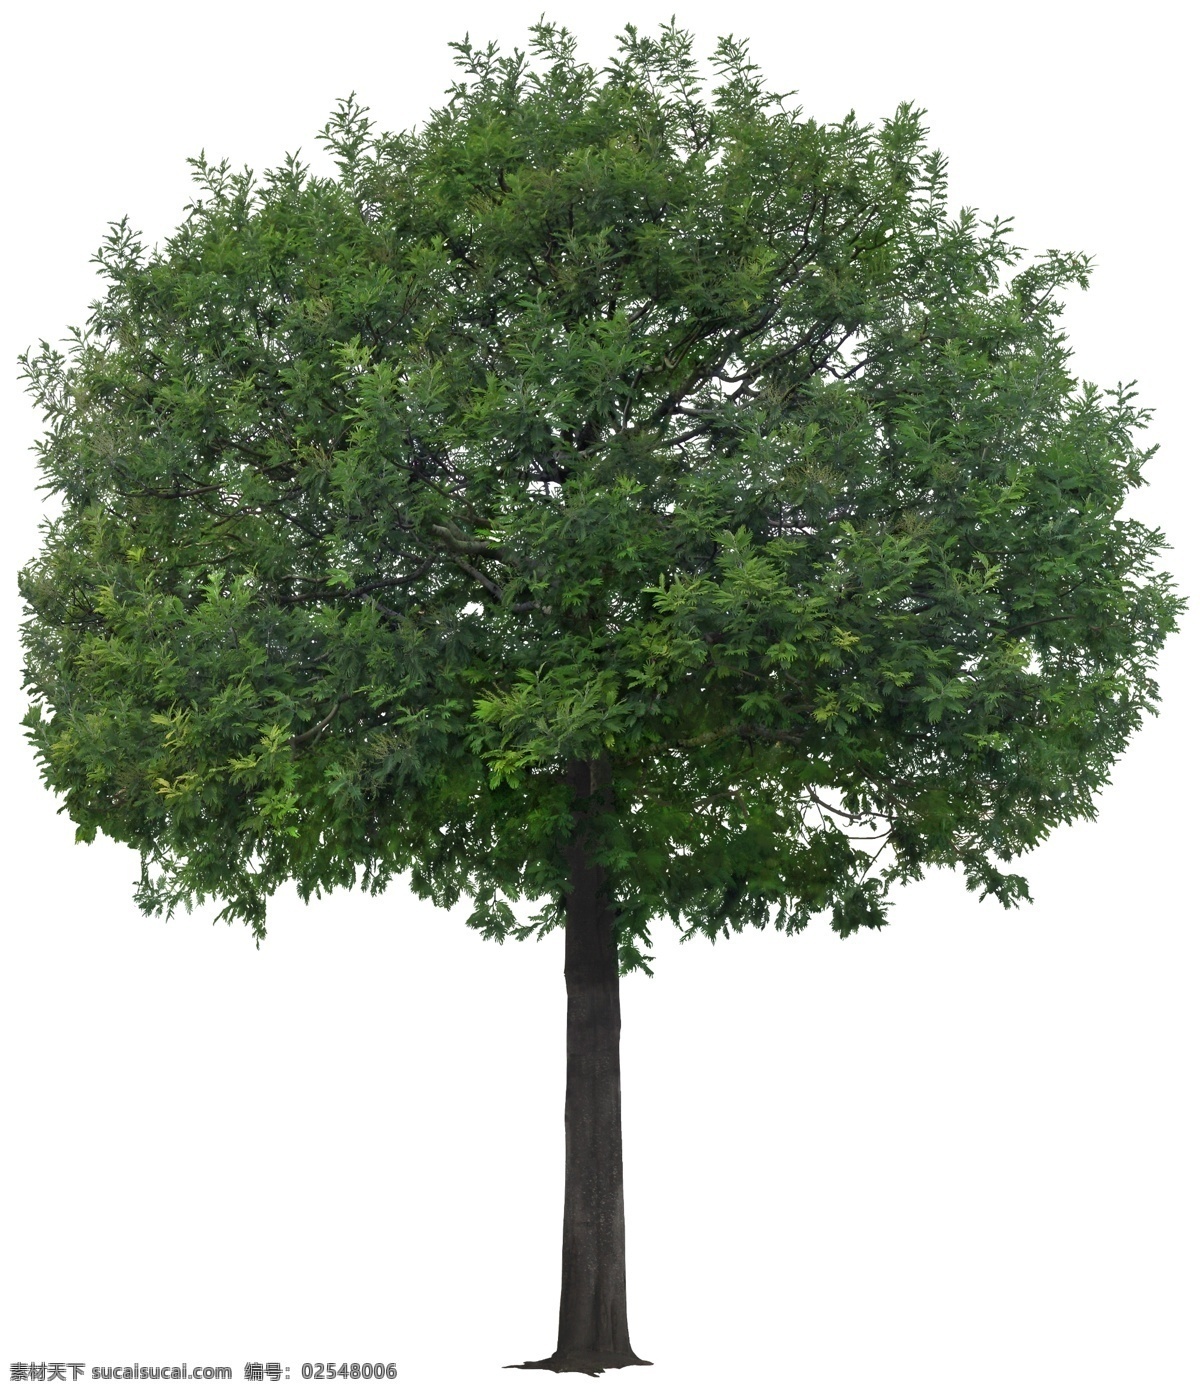 合欢树 合欢树psd 乔木 树木 植物素材 psd素材 植物 绿化素材 环境设计 景观设计